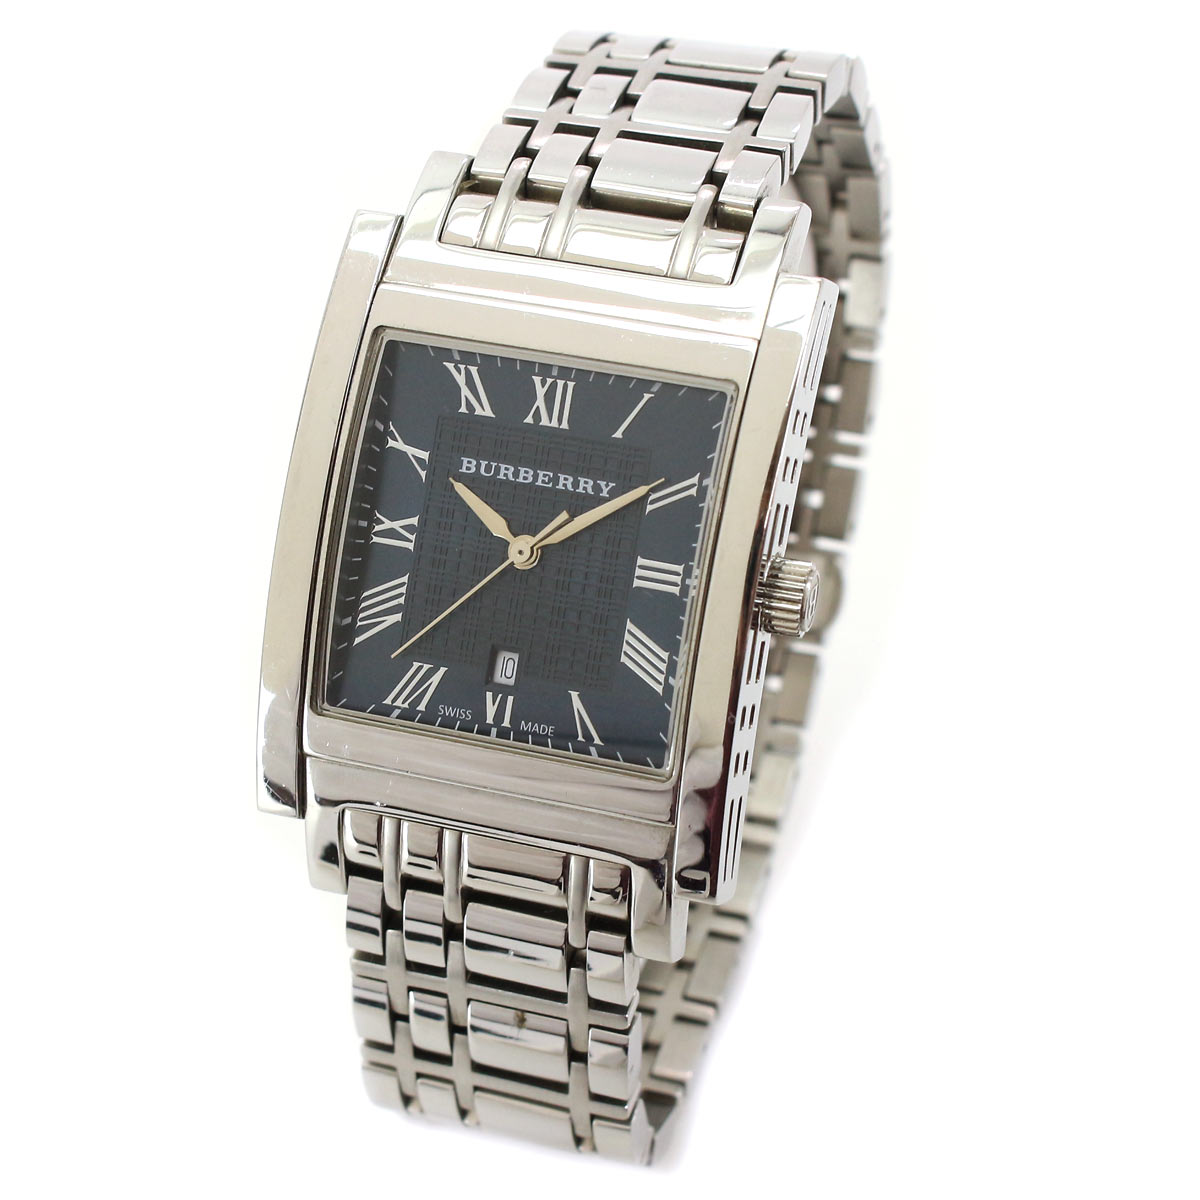 注目のブランド Burberryの腕時計 - 時計(男性用) - www.petromindo.com